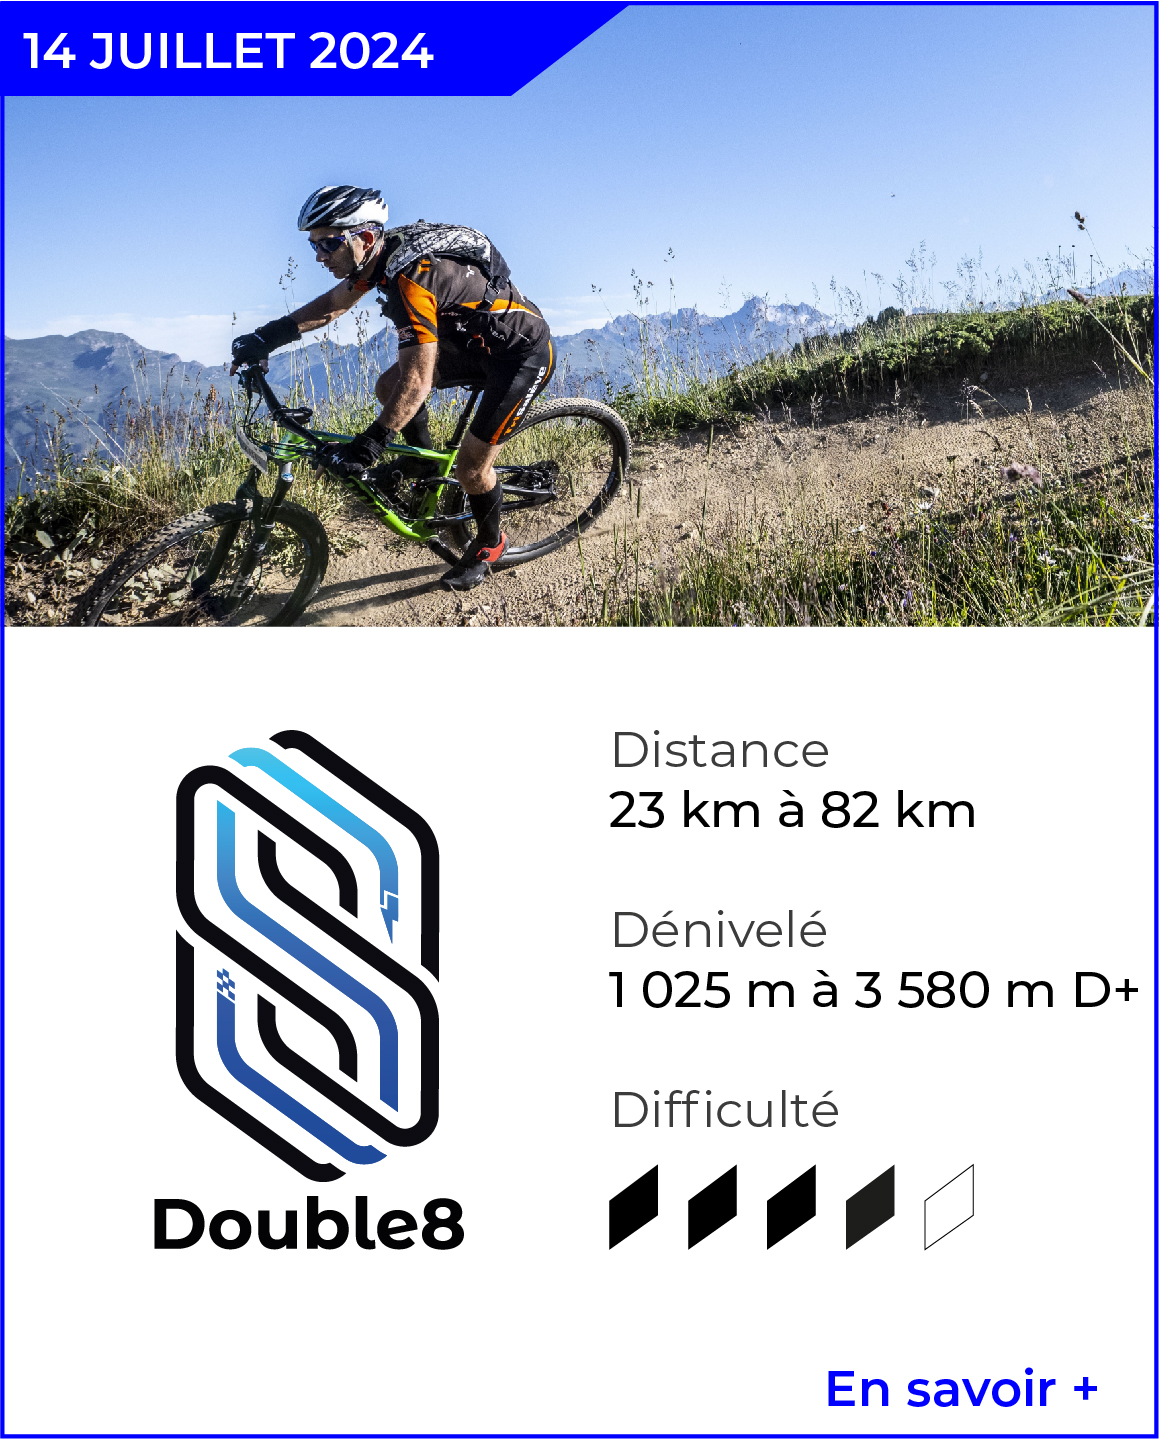 DOUBLE8 - Juillet 2024 - Savoie 